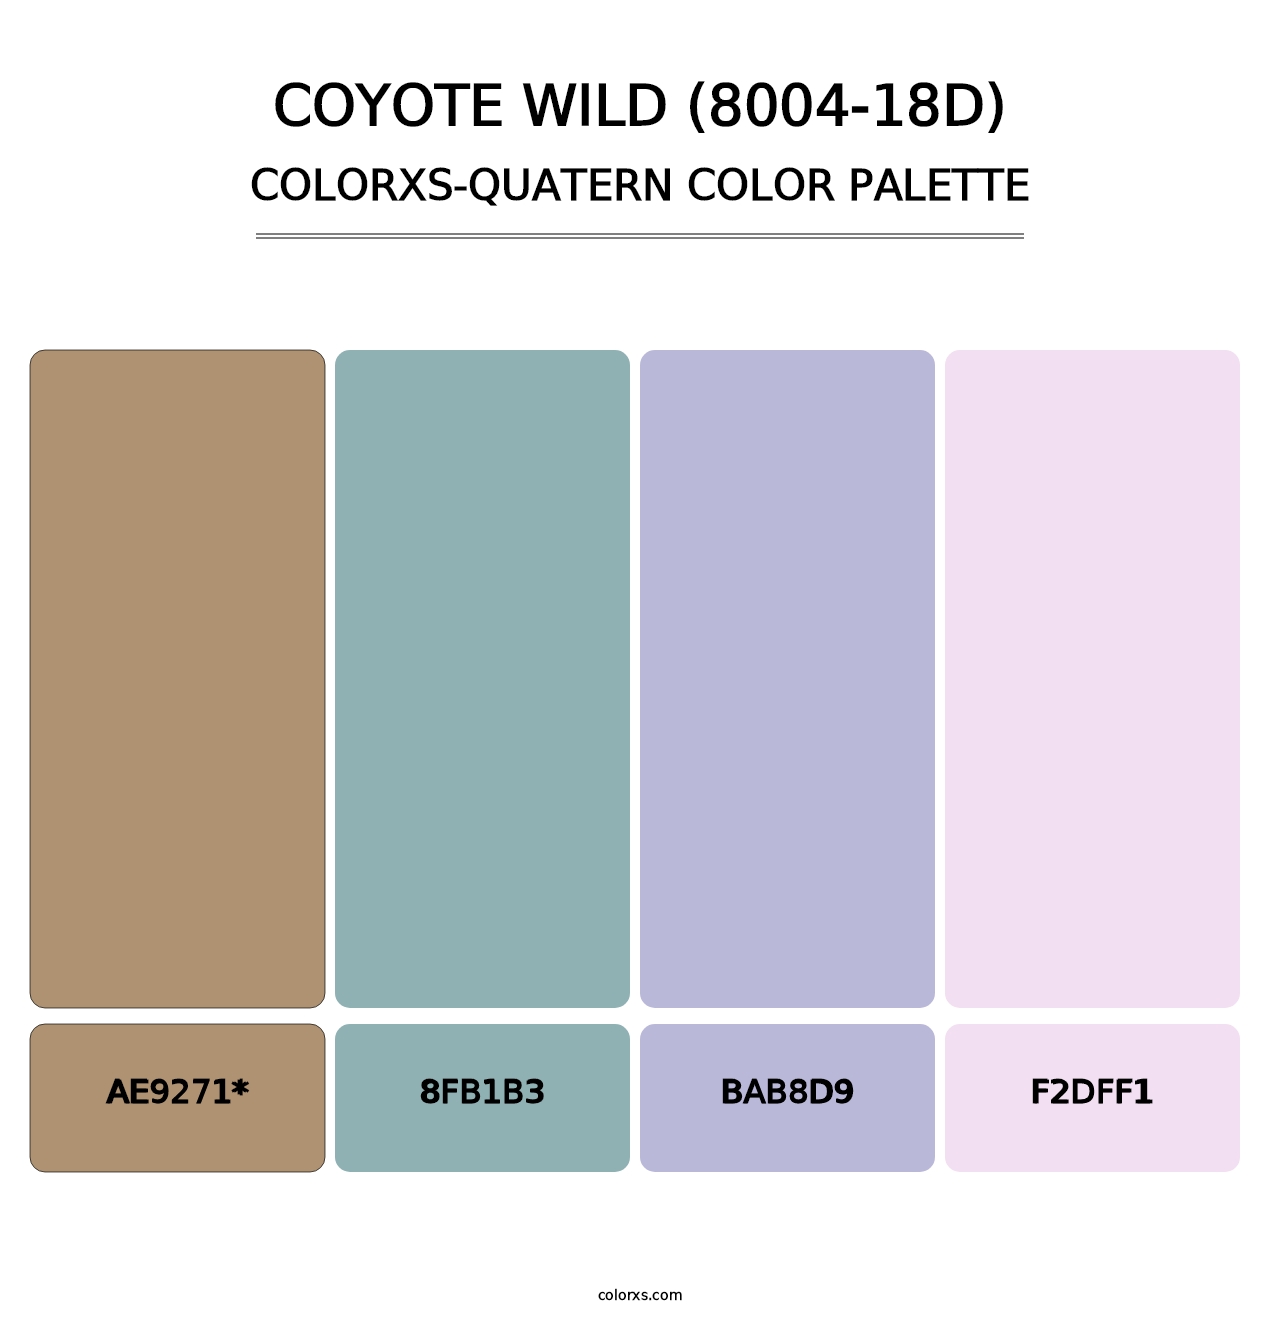 Coyote Wild (8004-18D) - Colorxs Quad Palette